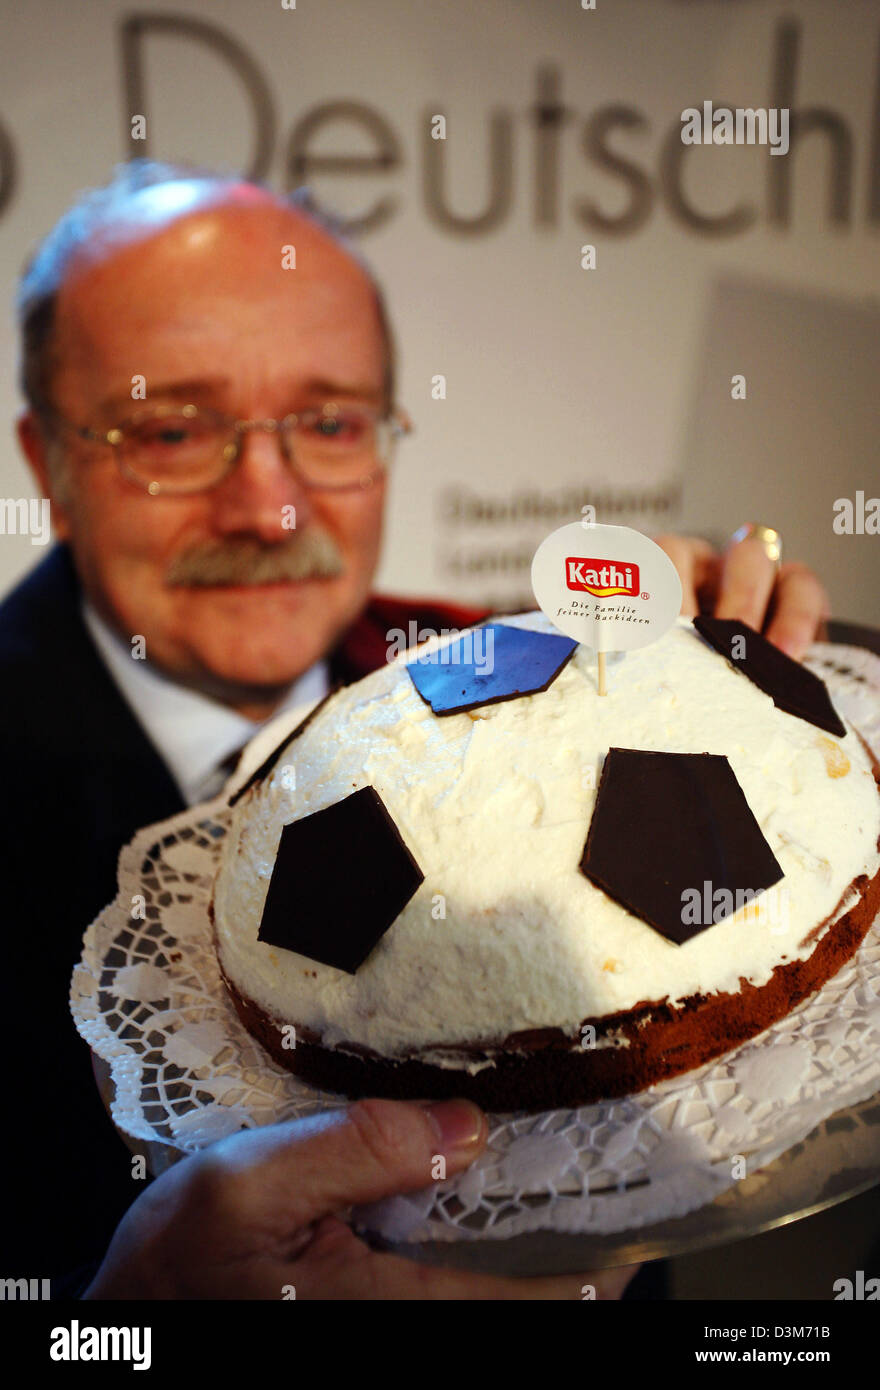 Dpa) - Rainer Thiele, gerente de productor de alimentos Kathi, presenta una  'fú torta en Leipzig, Alemania, 08 de diciembre de 2005. Es sólo de  Alemania fútbol pastel que los clientes pueden